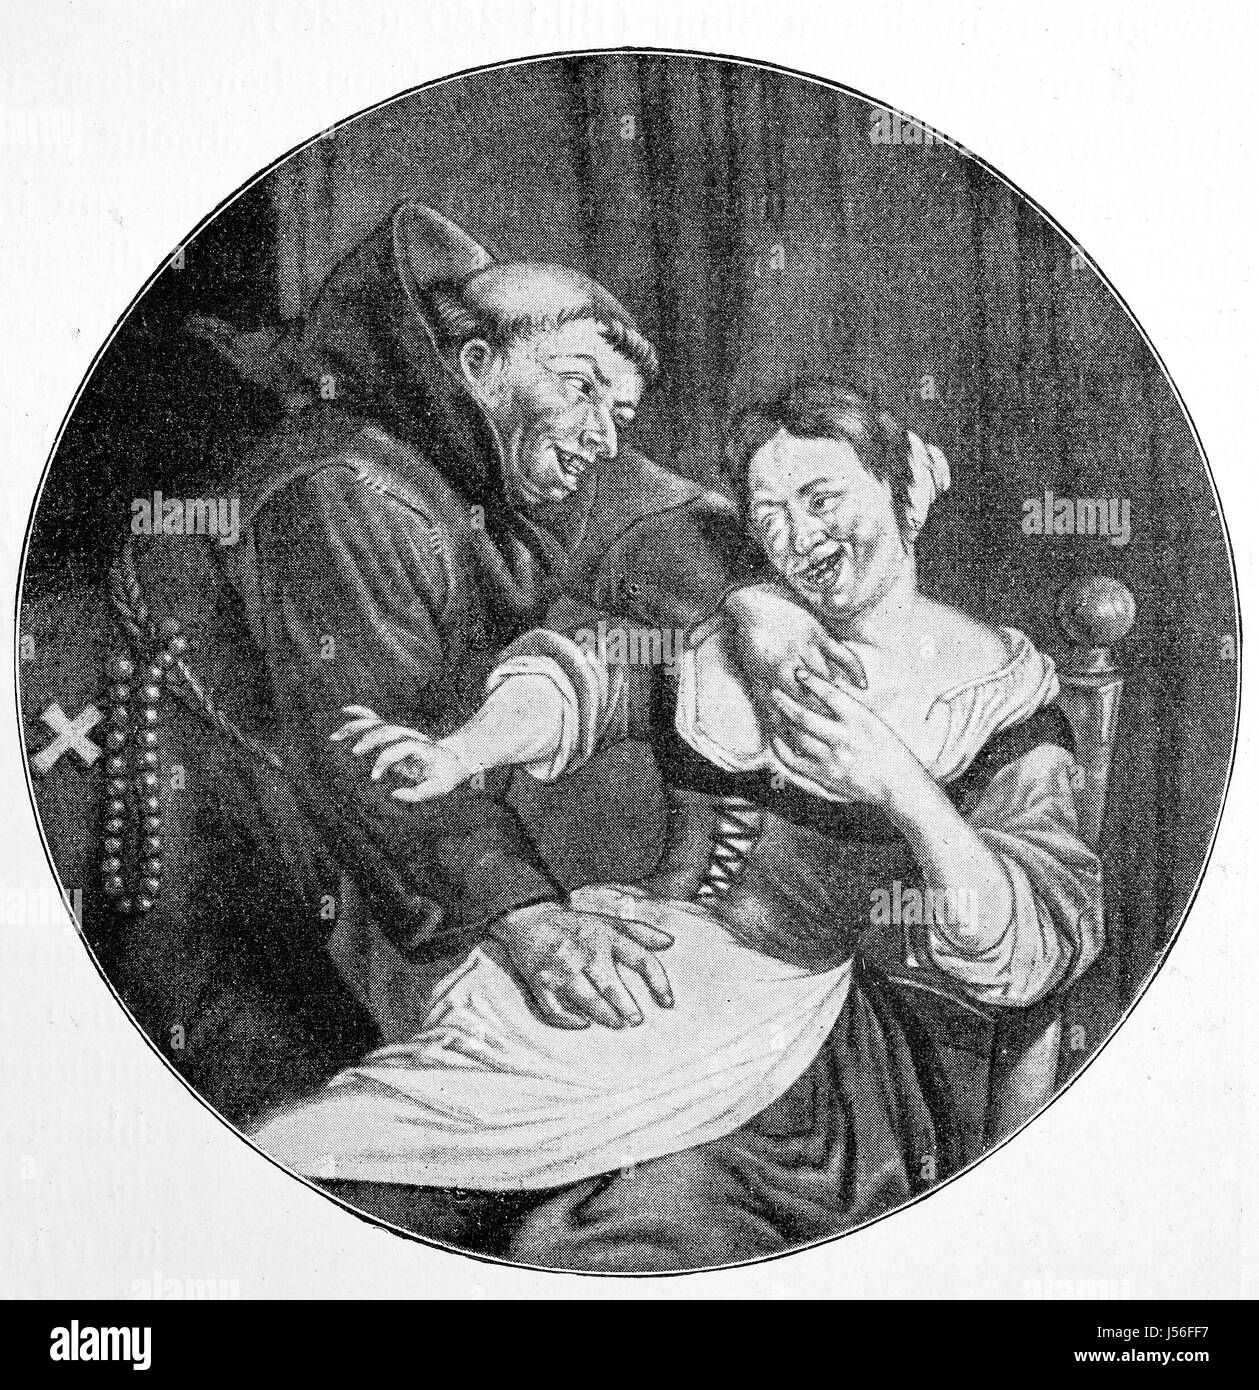 Quand le forgeron travaille, le moine flirte avec son épouse, Kupferstich, Hollande, 17e siècle, l'amélioration de la reproduction numérique d'une publication de l'année 1880 Banque D'Images